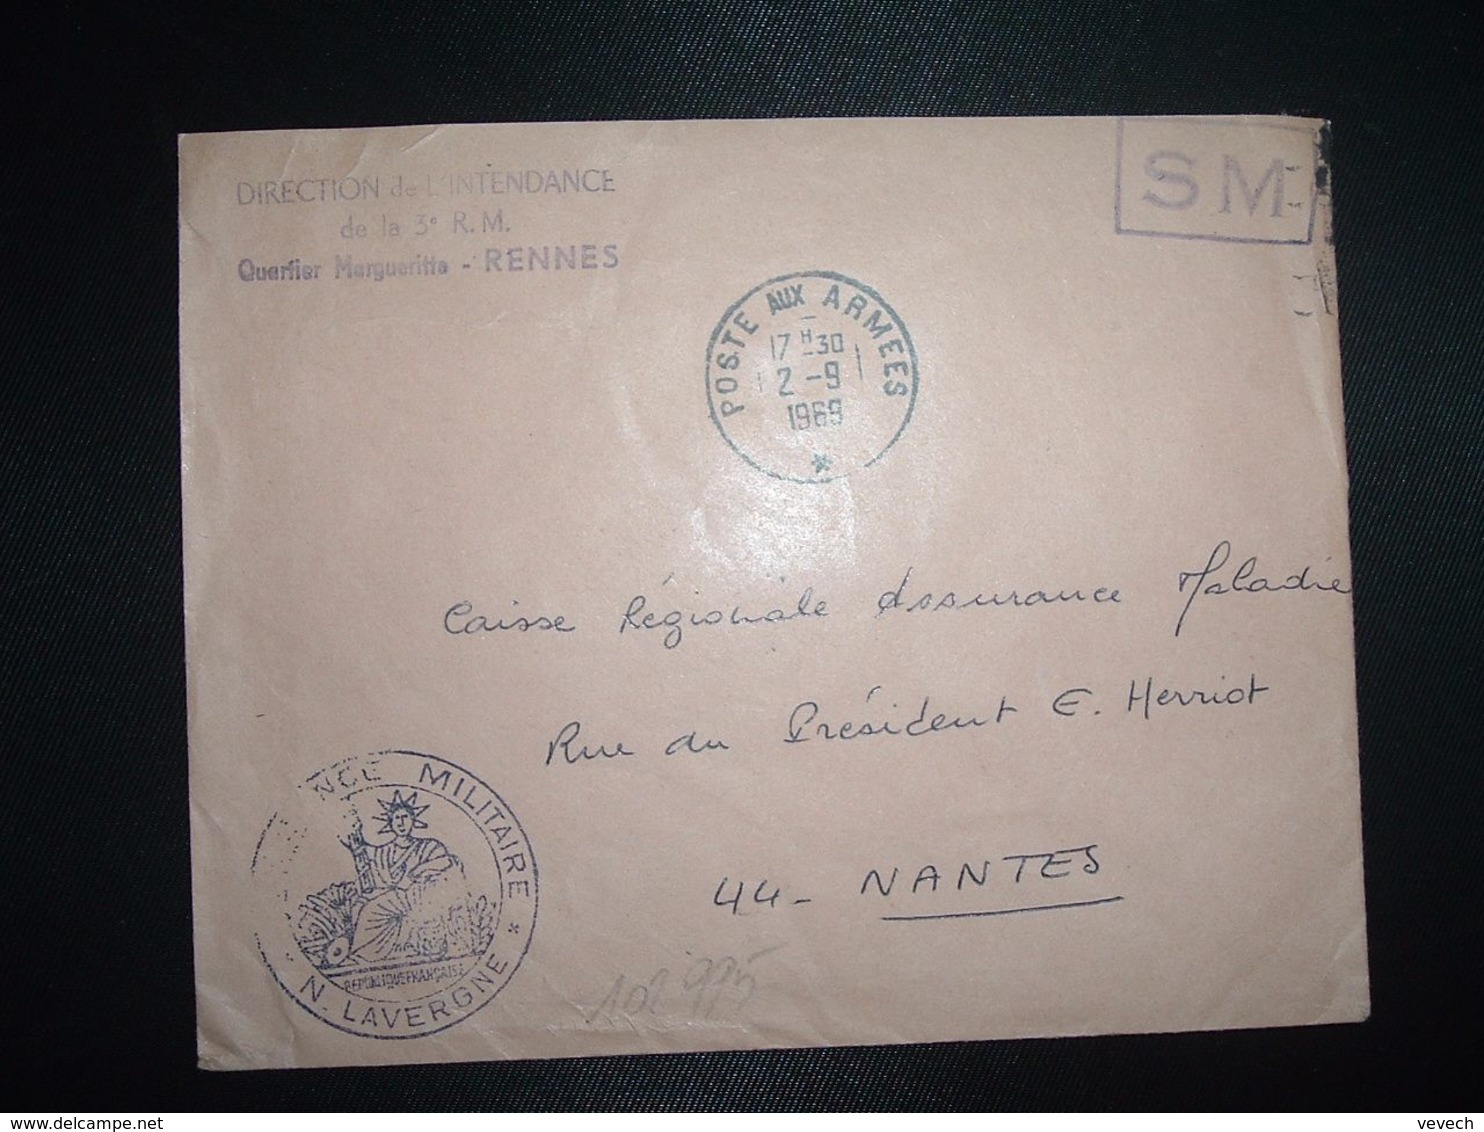 LETTRE OBL.2-9 1969 POSTE AUX ARMEES DIRECTION DE L'INTENDANCE De La 3e R.M. RENNES (35)+INTENDANCE N. LAVERGNE - Military Postmarks From 1900 (out Of Wars Periods)